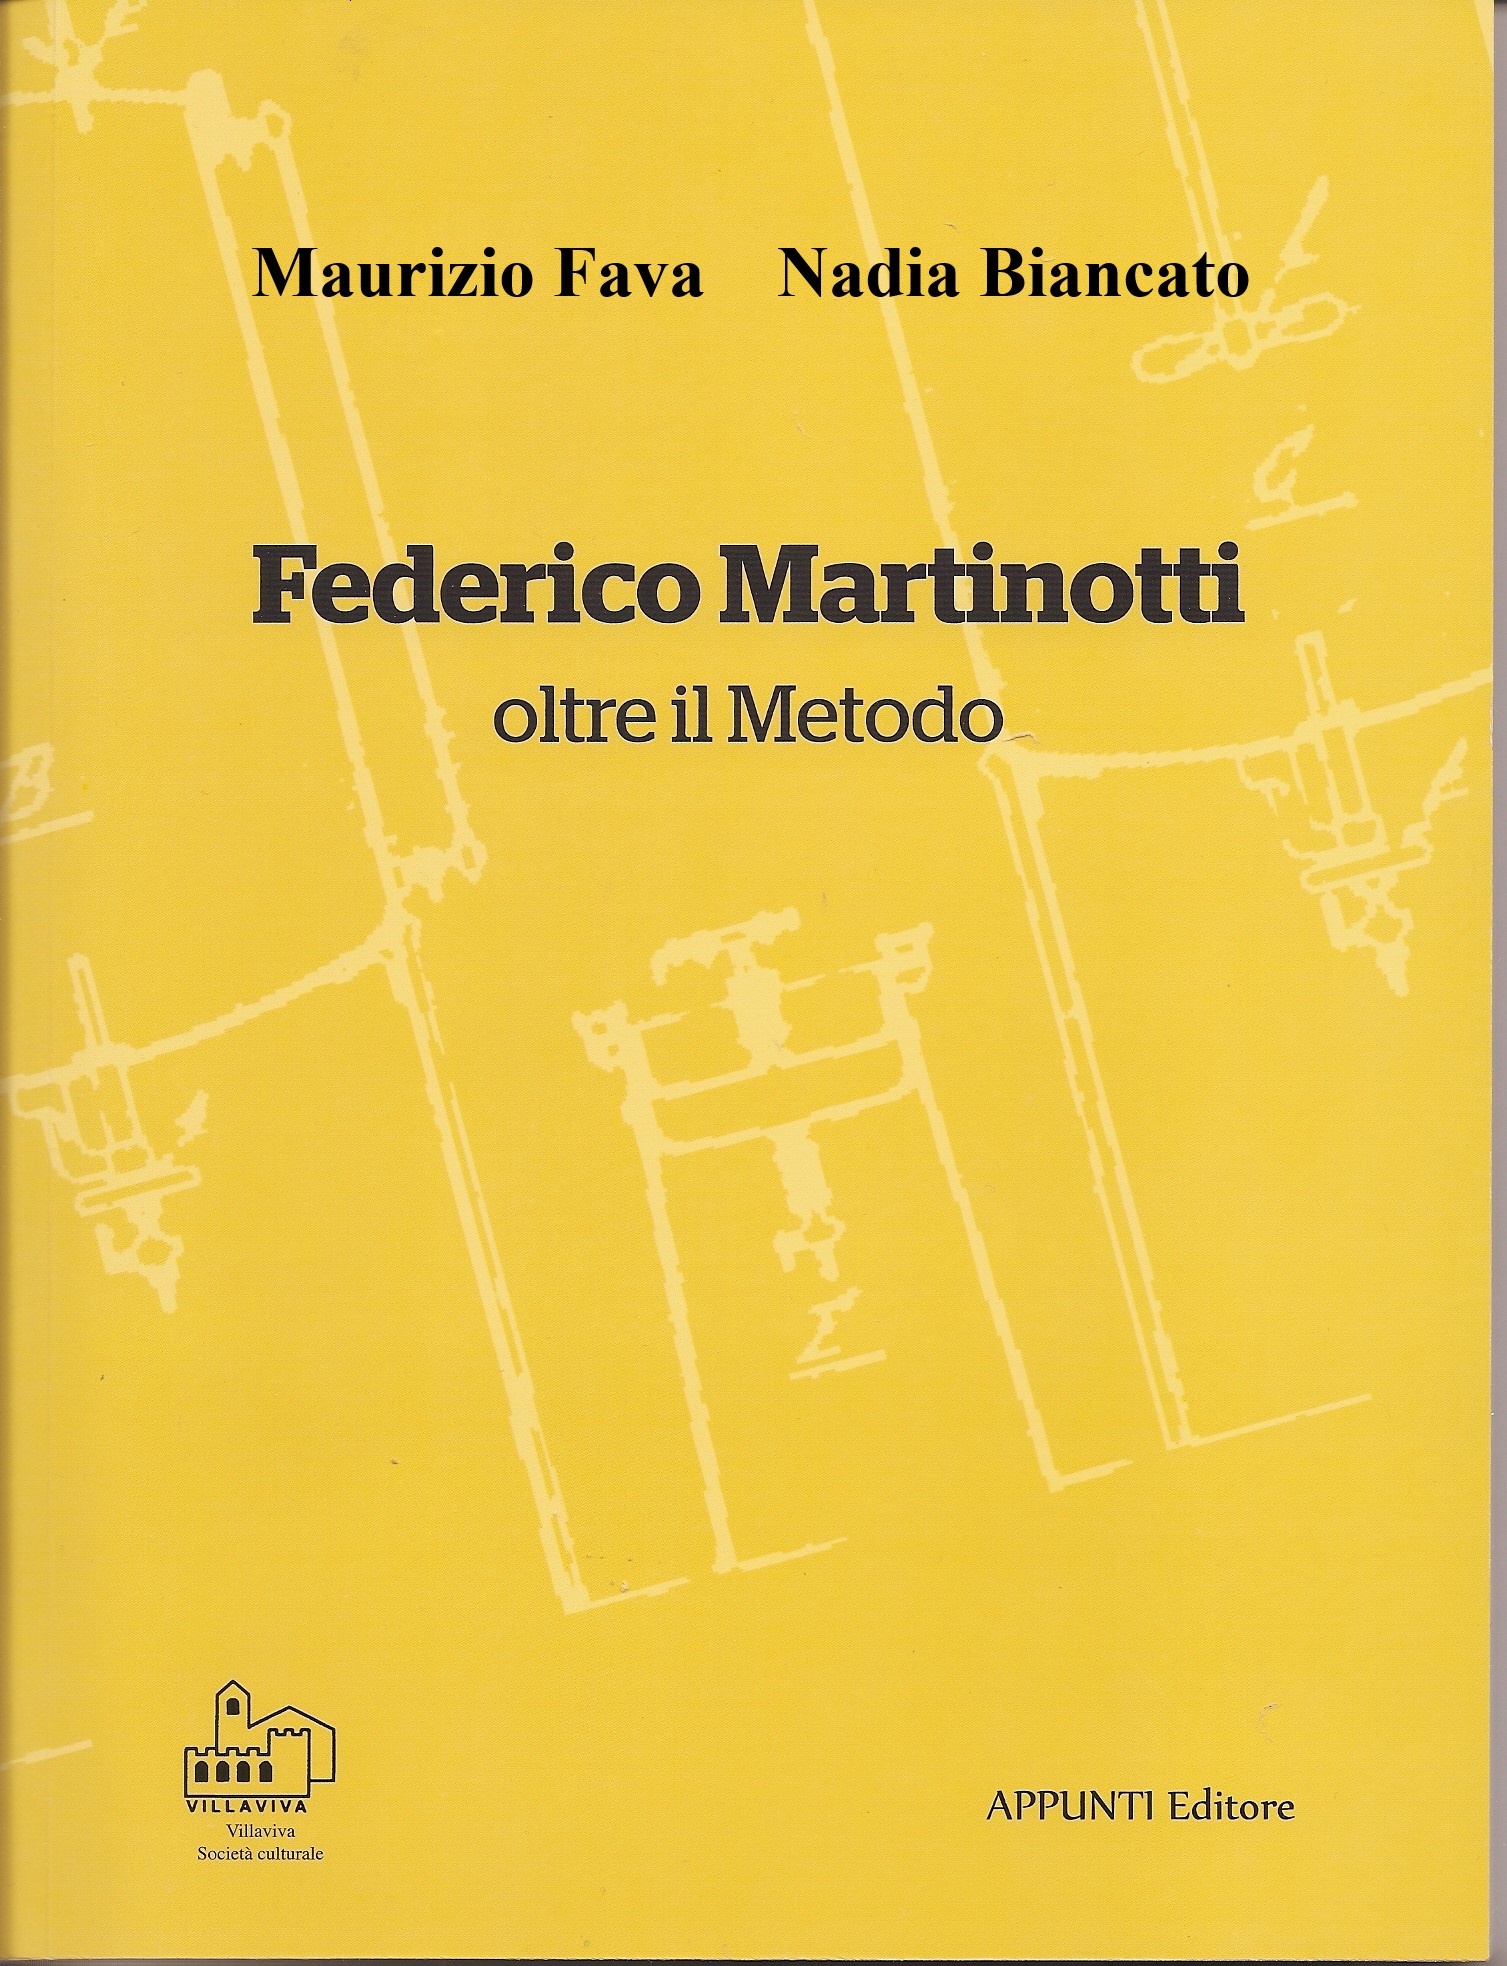 Federico Martinotti, scienziato e galantuomo, padre dello Spumante Italiano. Cent’anni dopo. 1924 – 2024